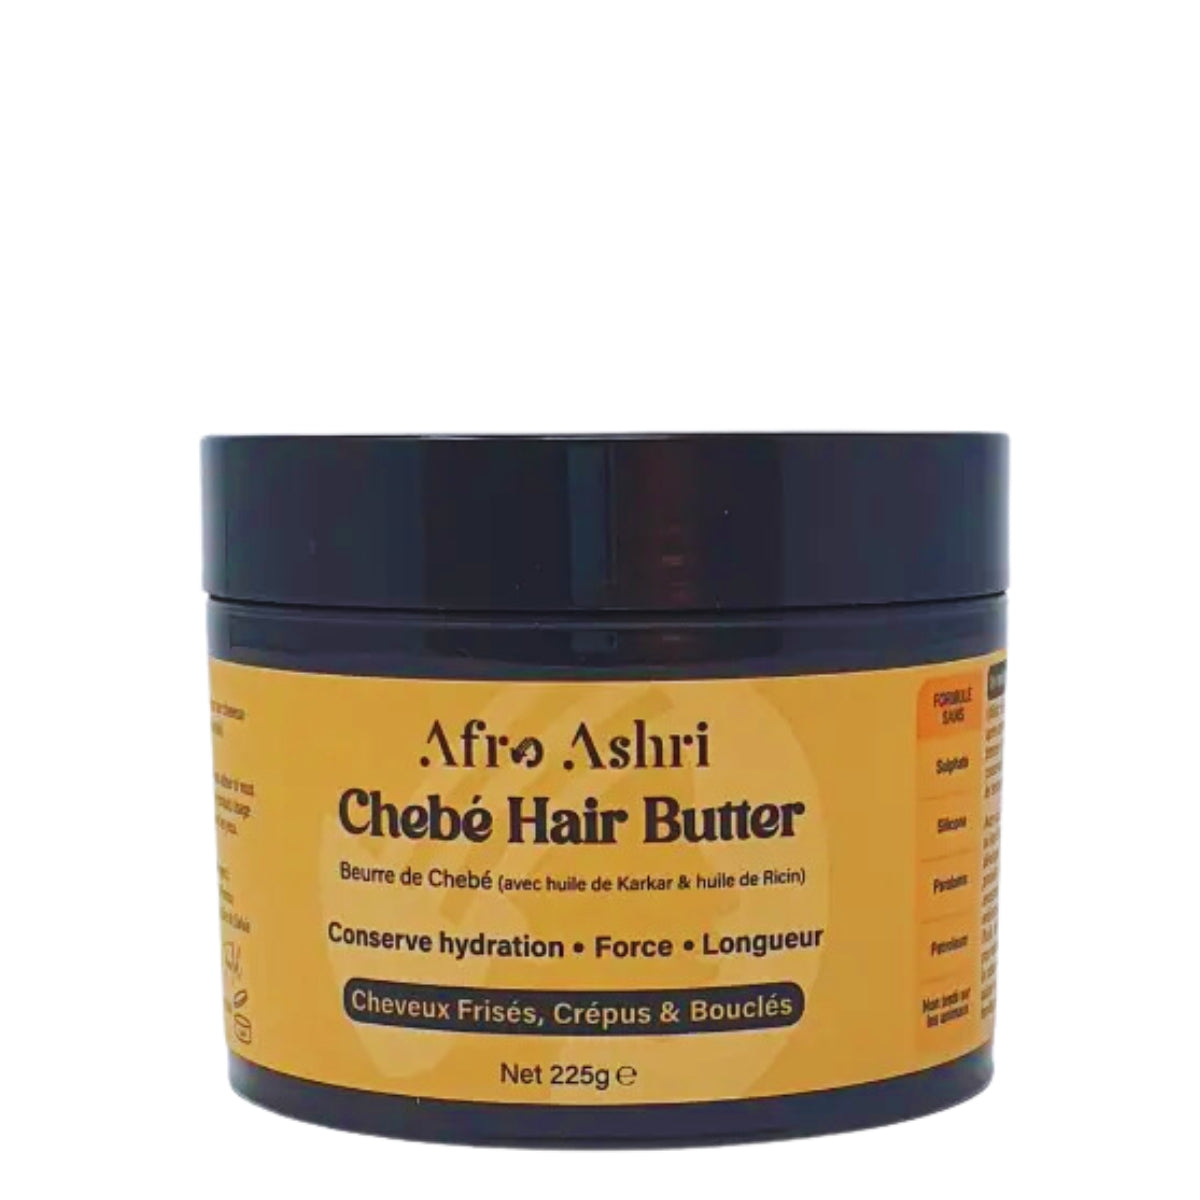 Afro Ashri Chebé Hair Butter permet de retenir l'hydratation et de fortifier tout en favorisant la croissance de vos cheveux. 100% naturel et fabriqué à la main.